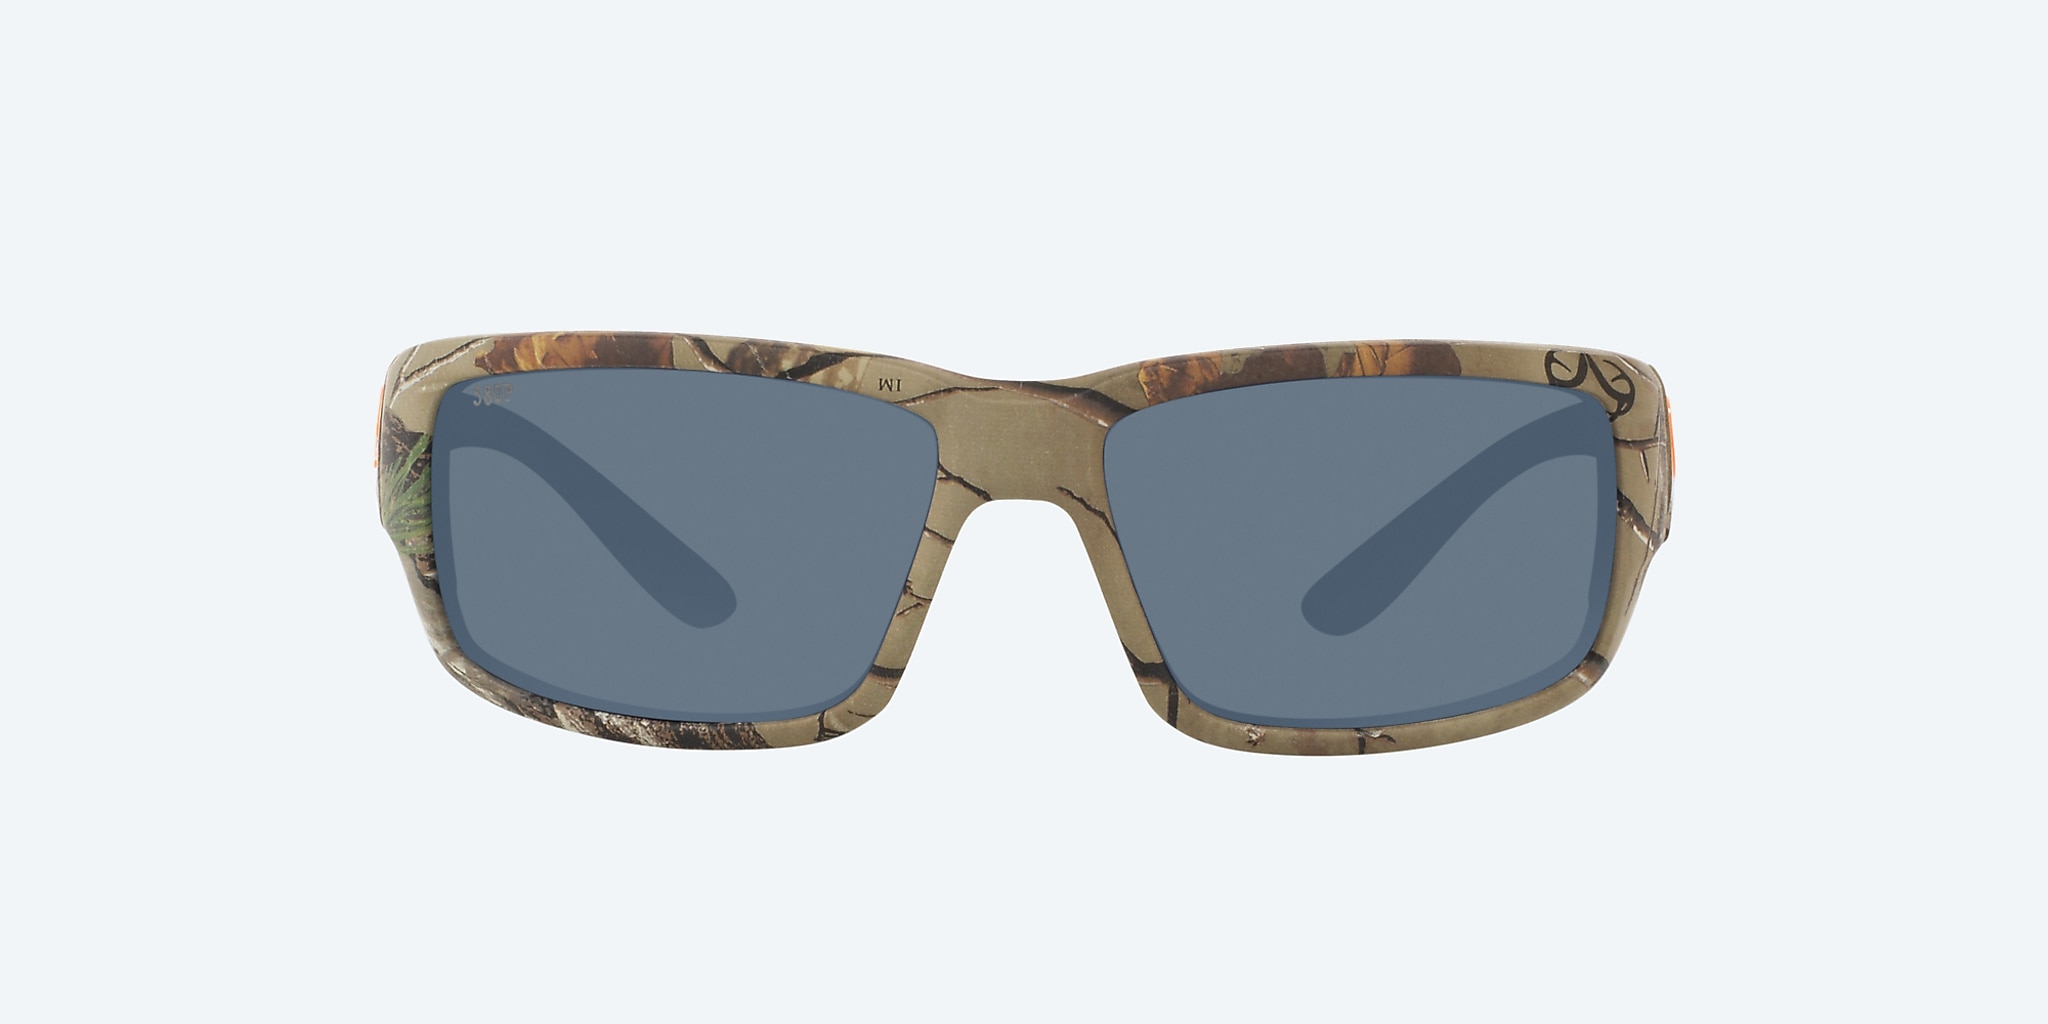  Camo Costa Sunglasses For Men